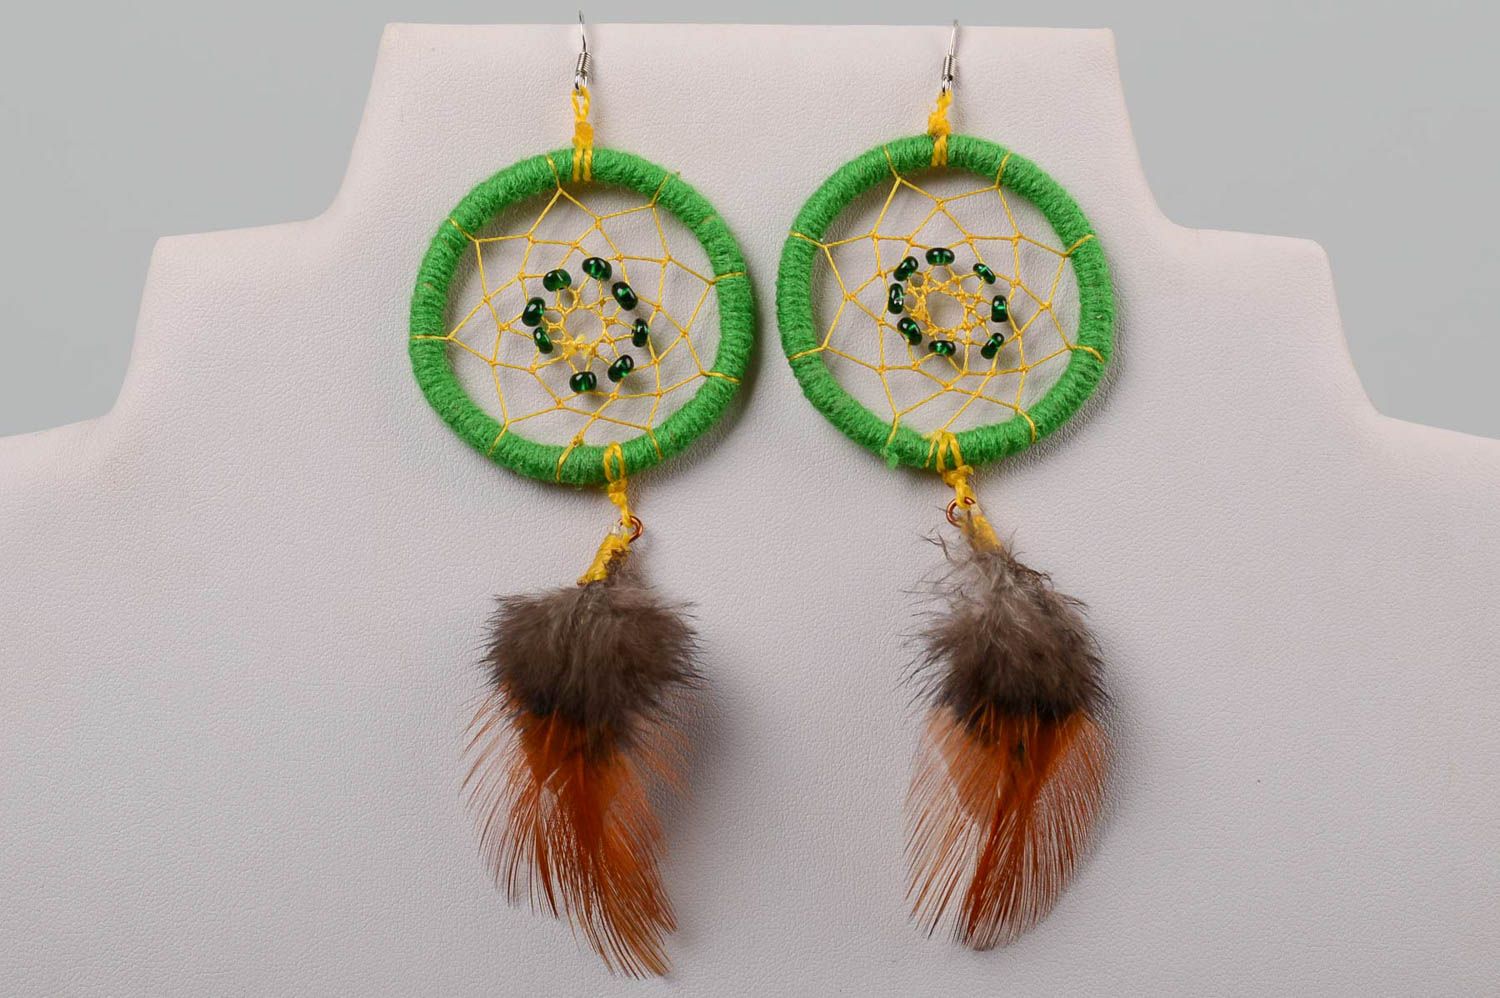 Handmade earrings designer accessories dreamcatcher earrings for girls photo 4